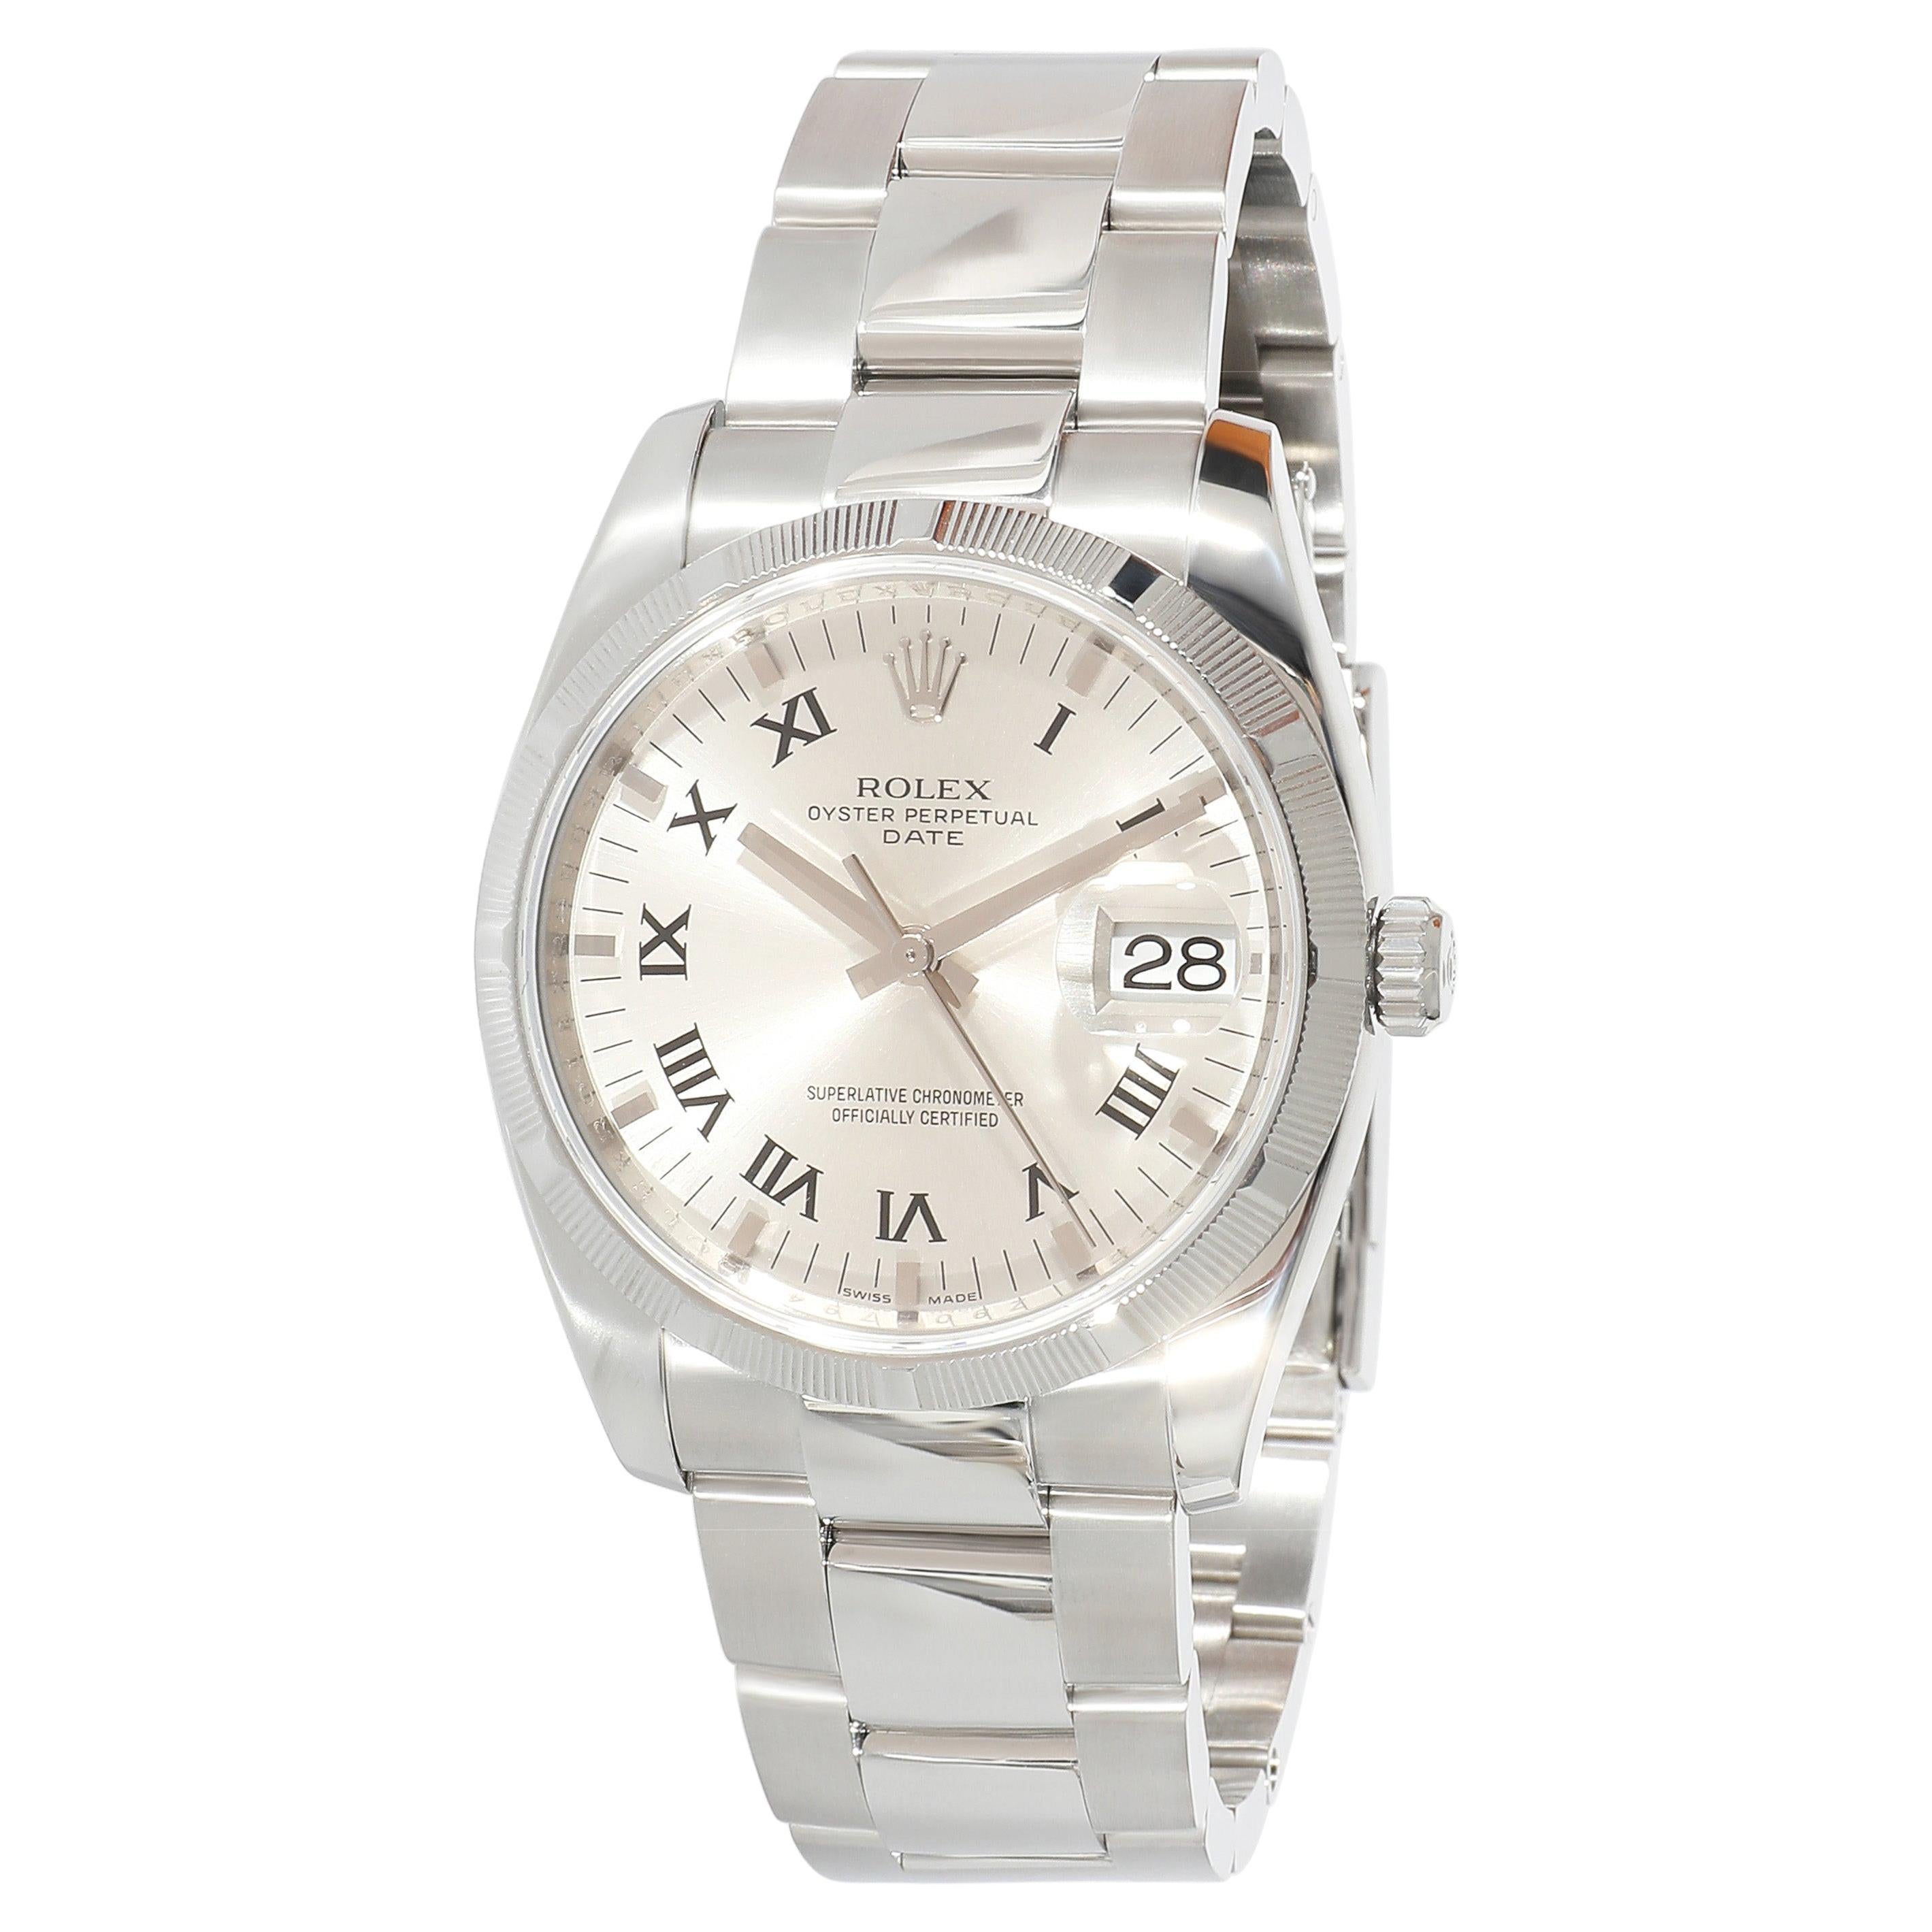 Louis Vuitton Tambour Q11BG Unisex Watch in Stainless Steel at 1stDibs   louis vuitton stainless steel watch, stainless steel louis vuitton, unisex  louis vuitton watch